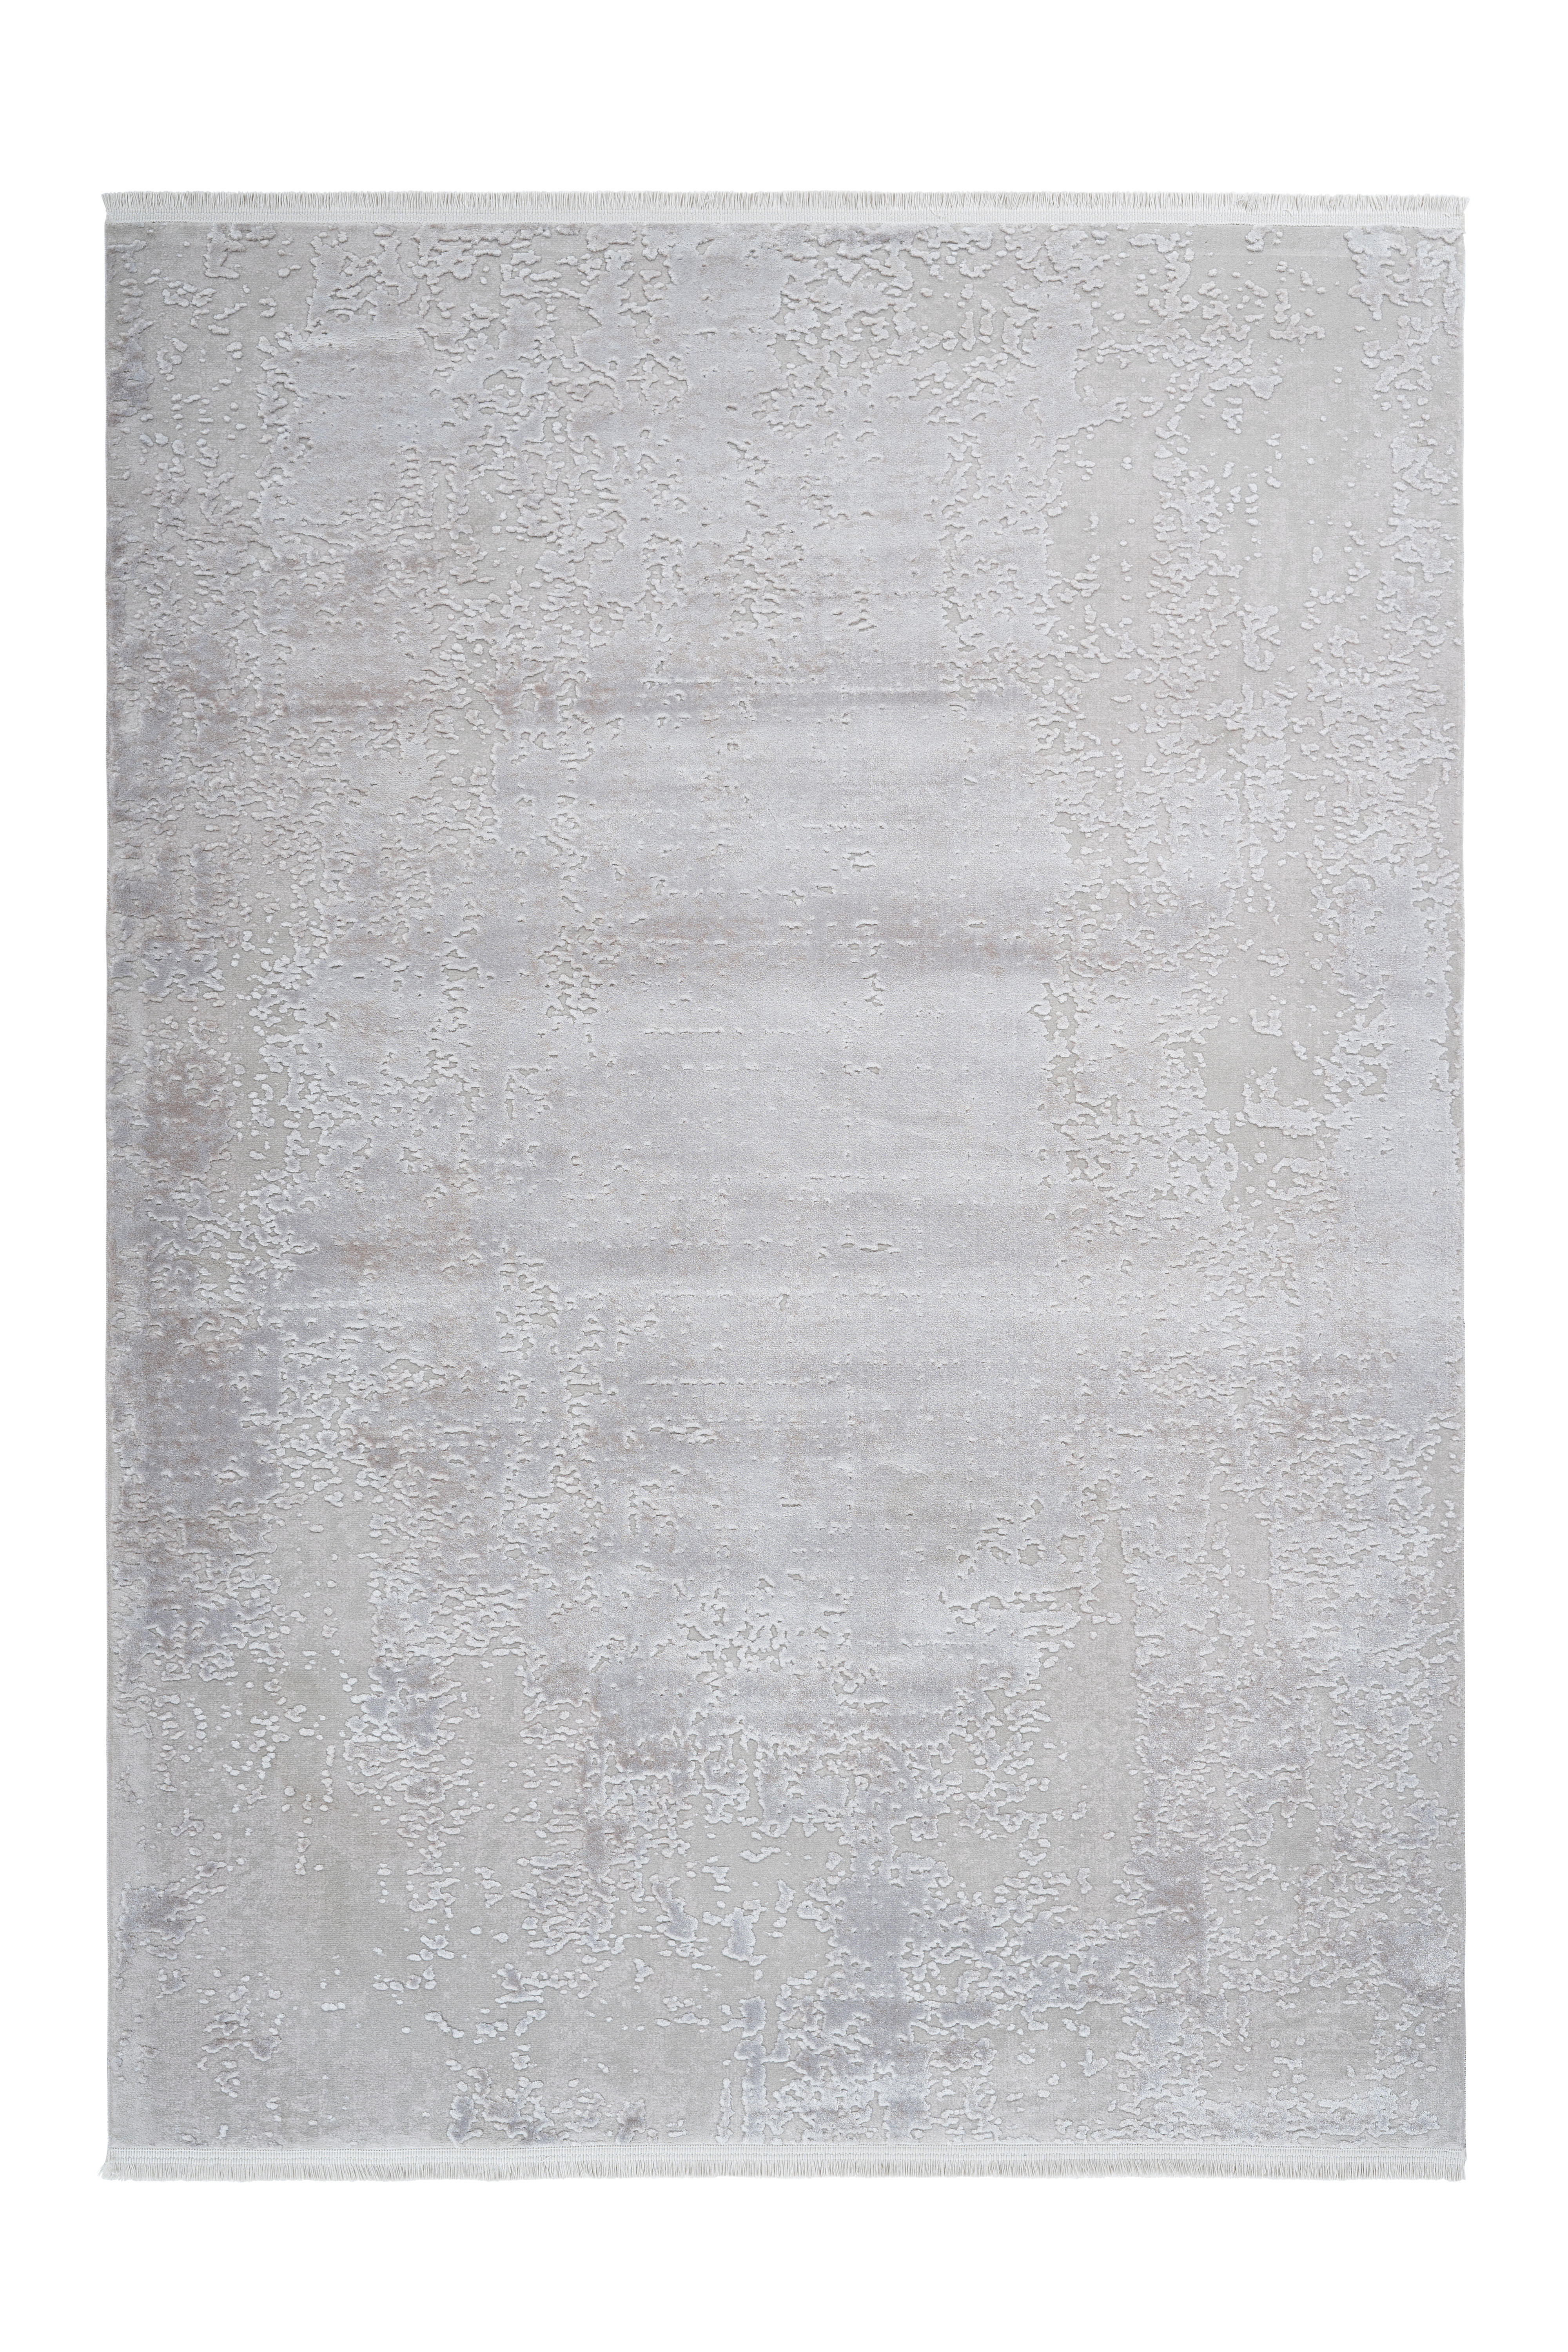 TKANI TEPIH  srebrne boje     - srebrne boje, Design, tekstil (80/150cm) - Pierre Cardin